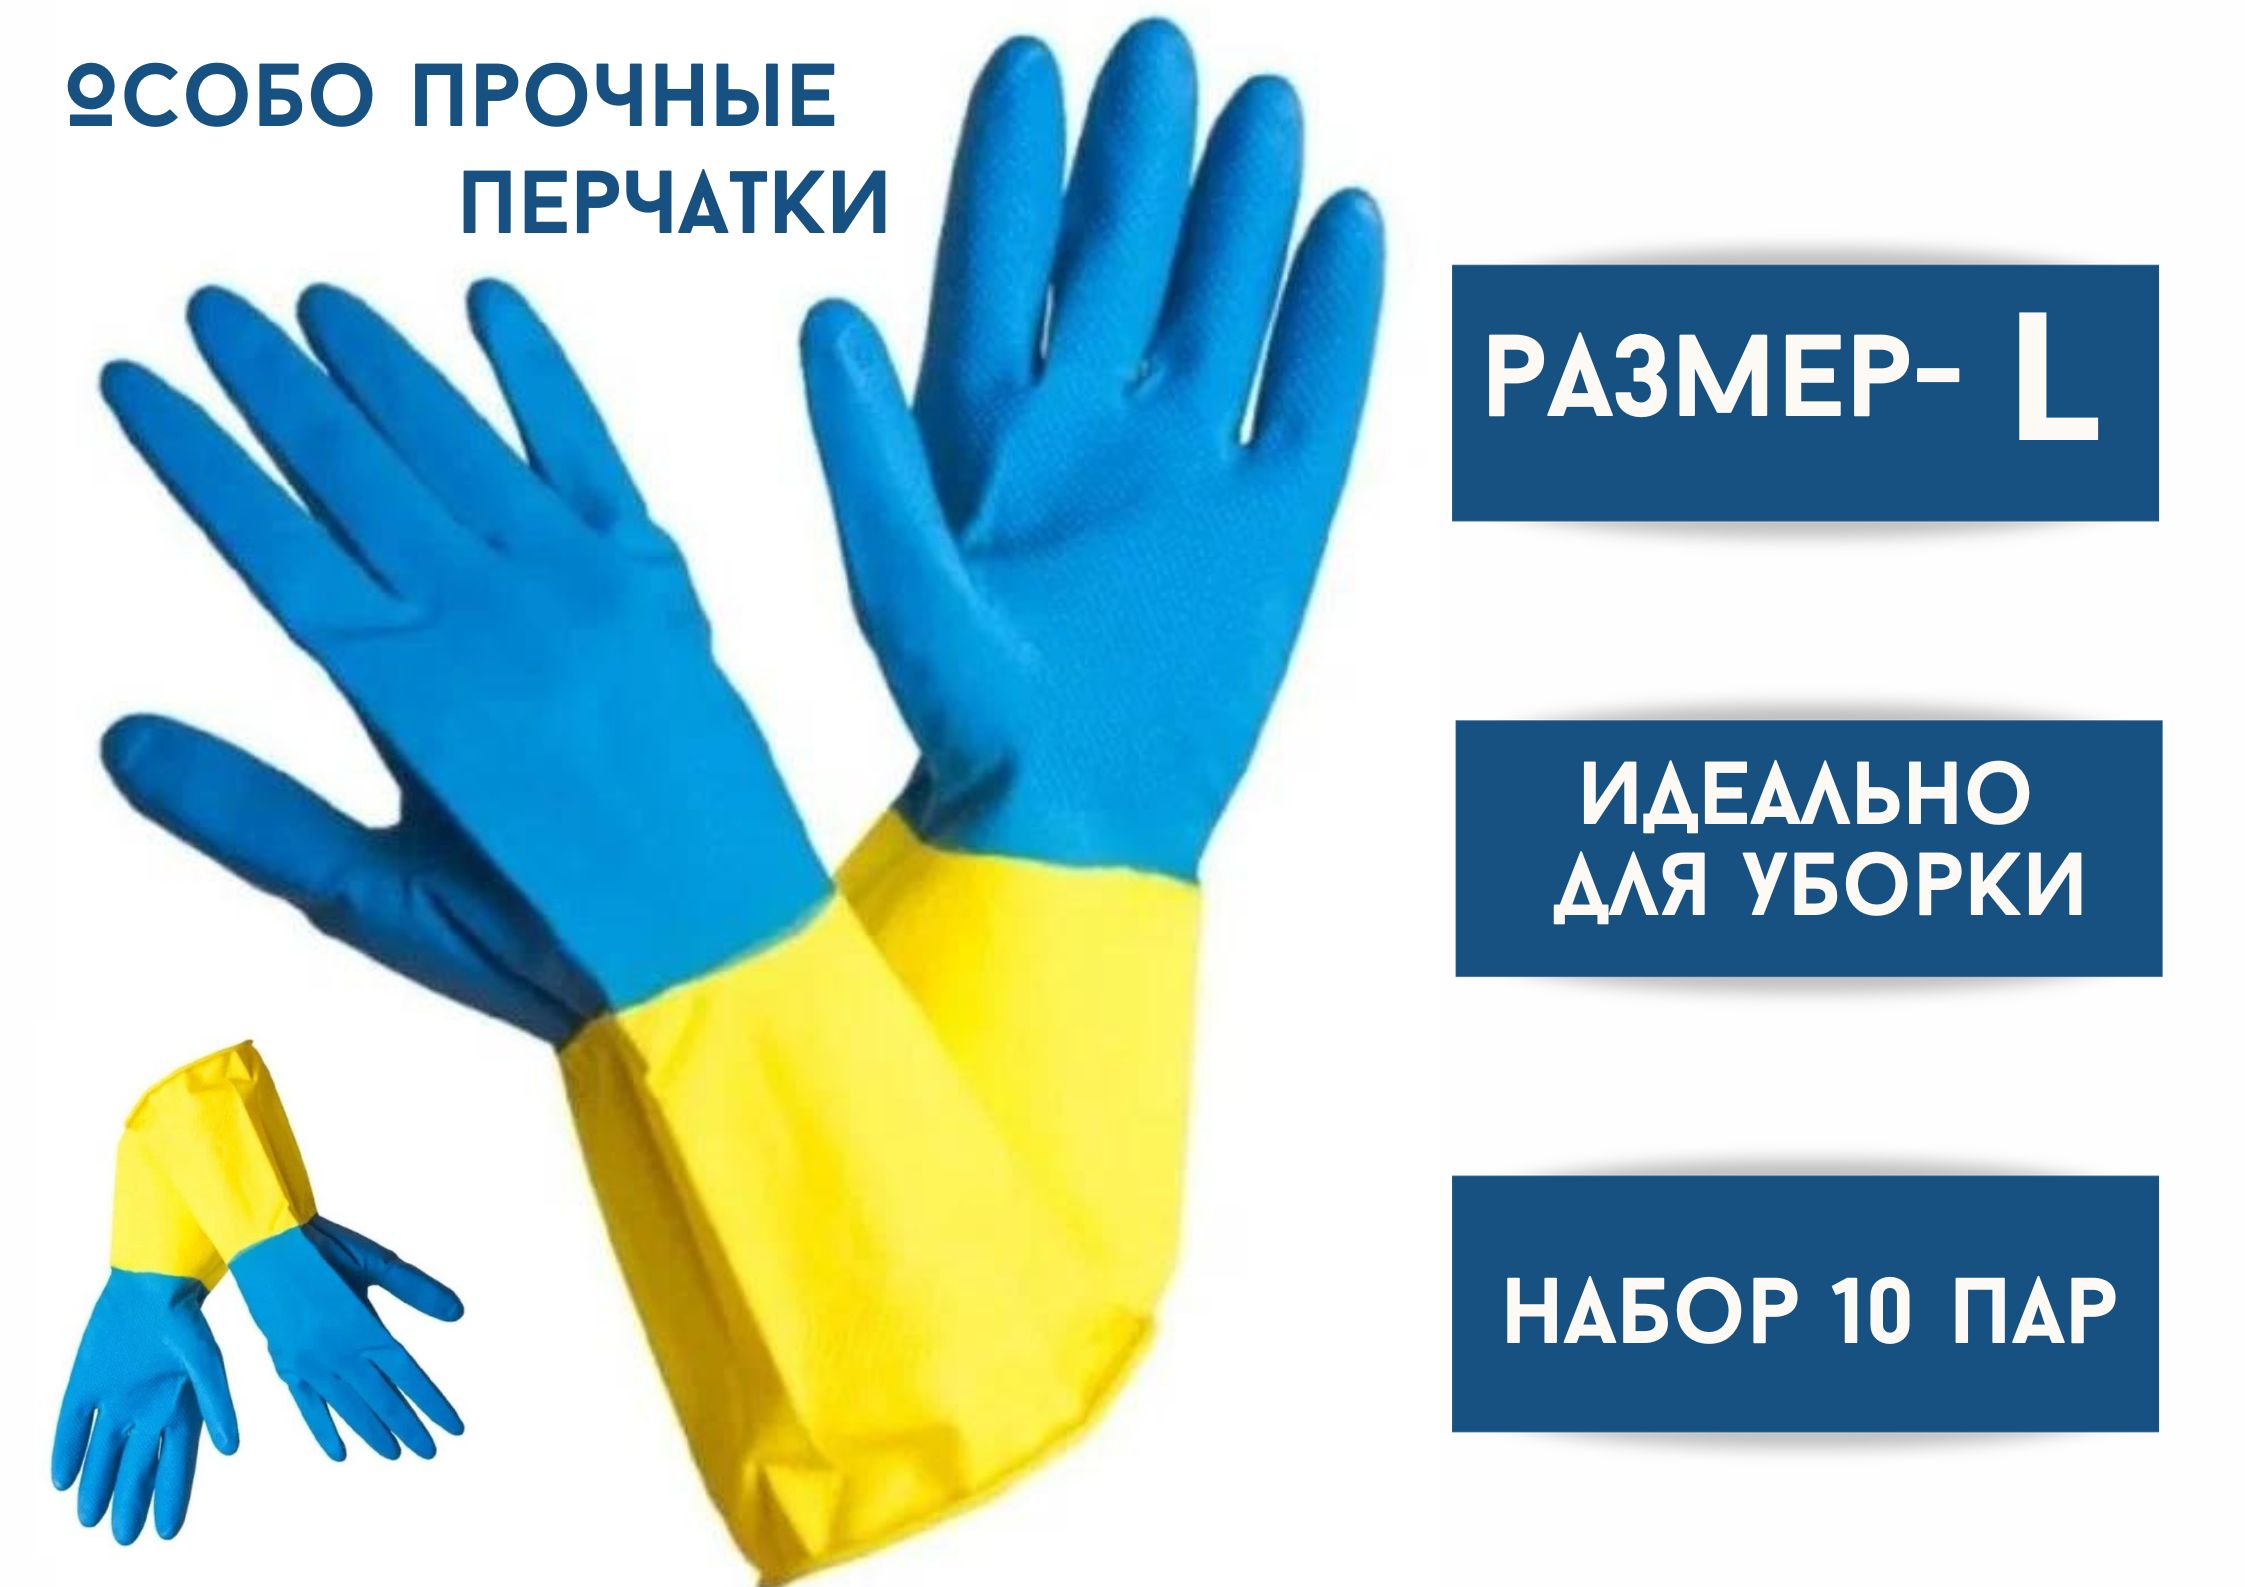 Перчатки хозяйственные БытСервис резиновые, L, особо прочные, синий-желтый, 10 пар